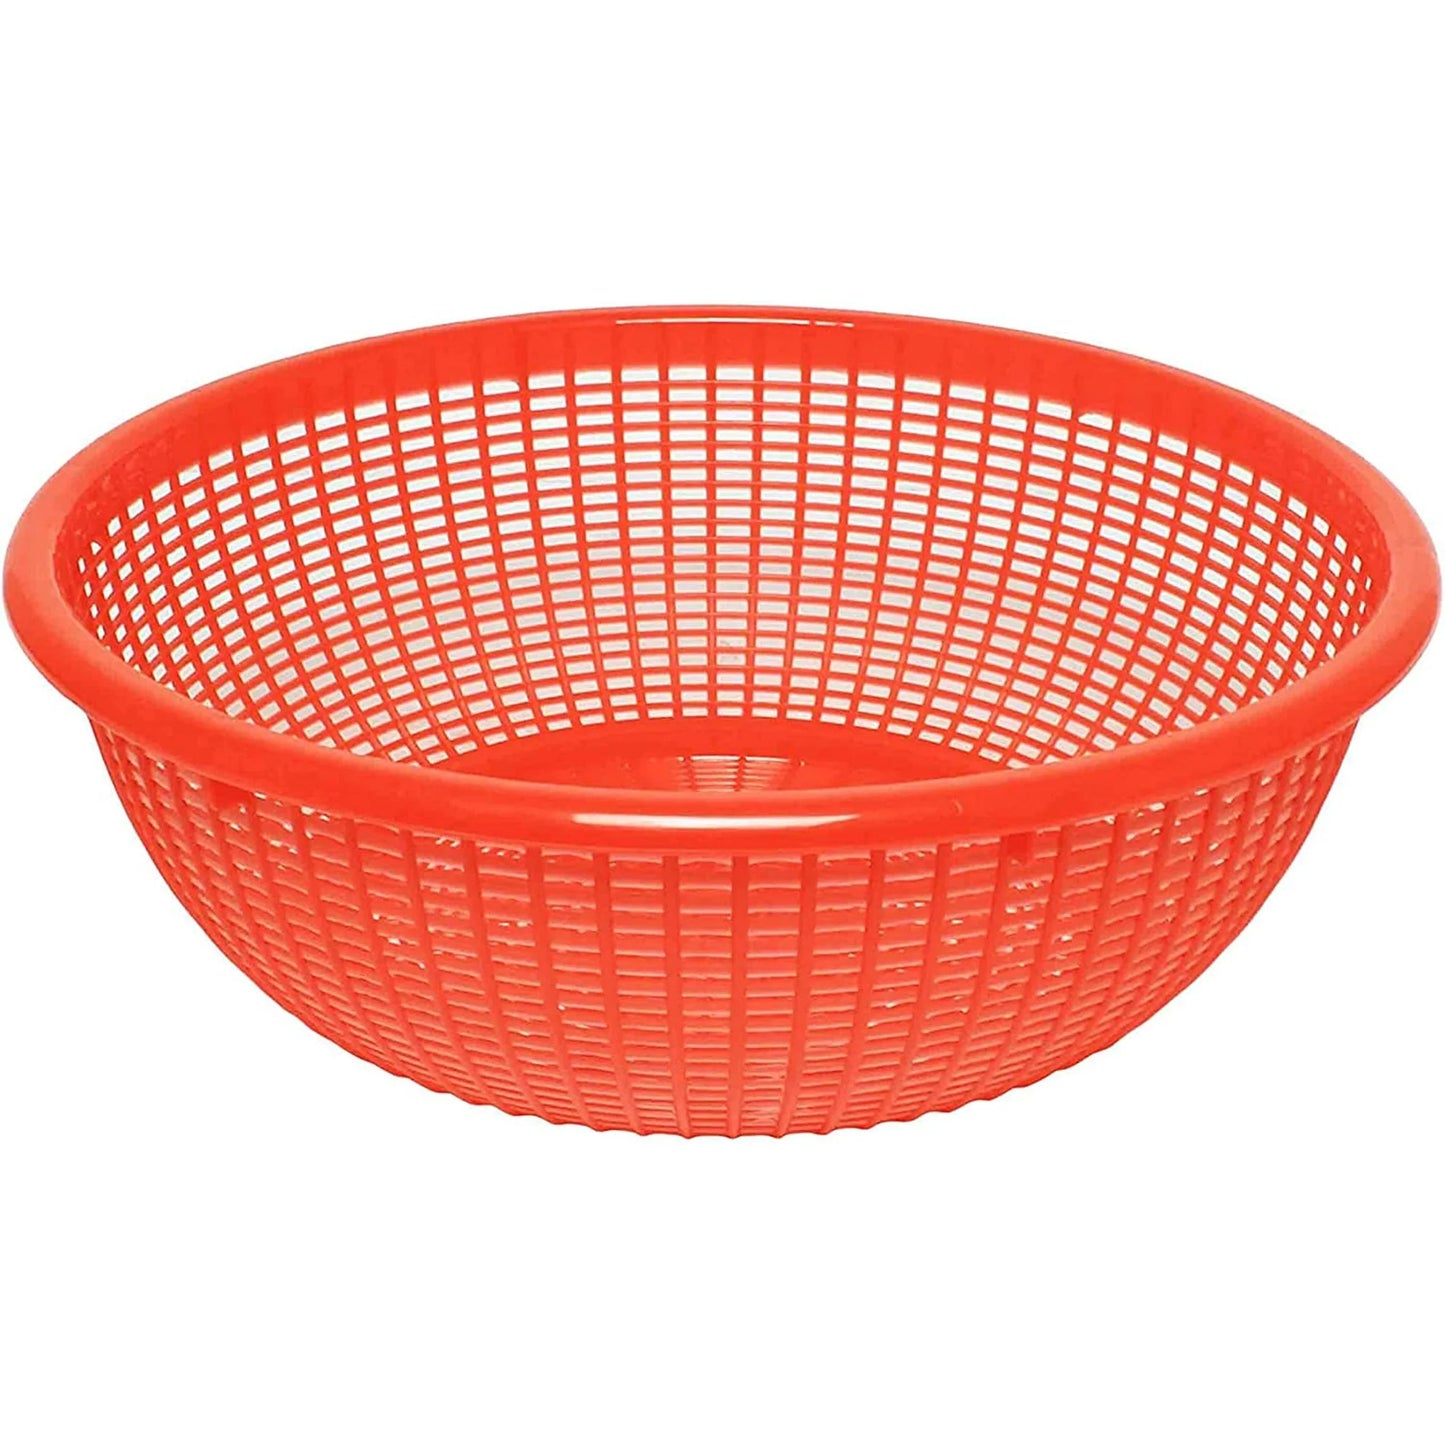 15" Red Plastic Basket / Colander